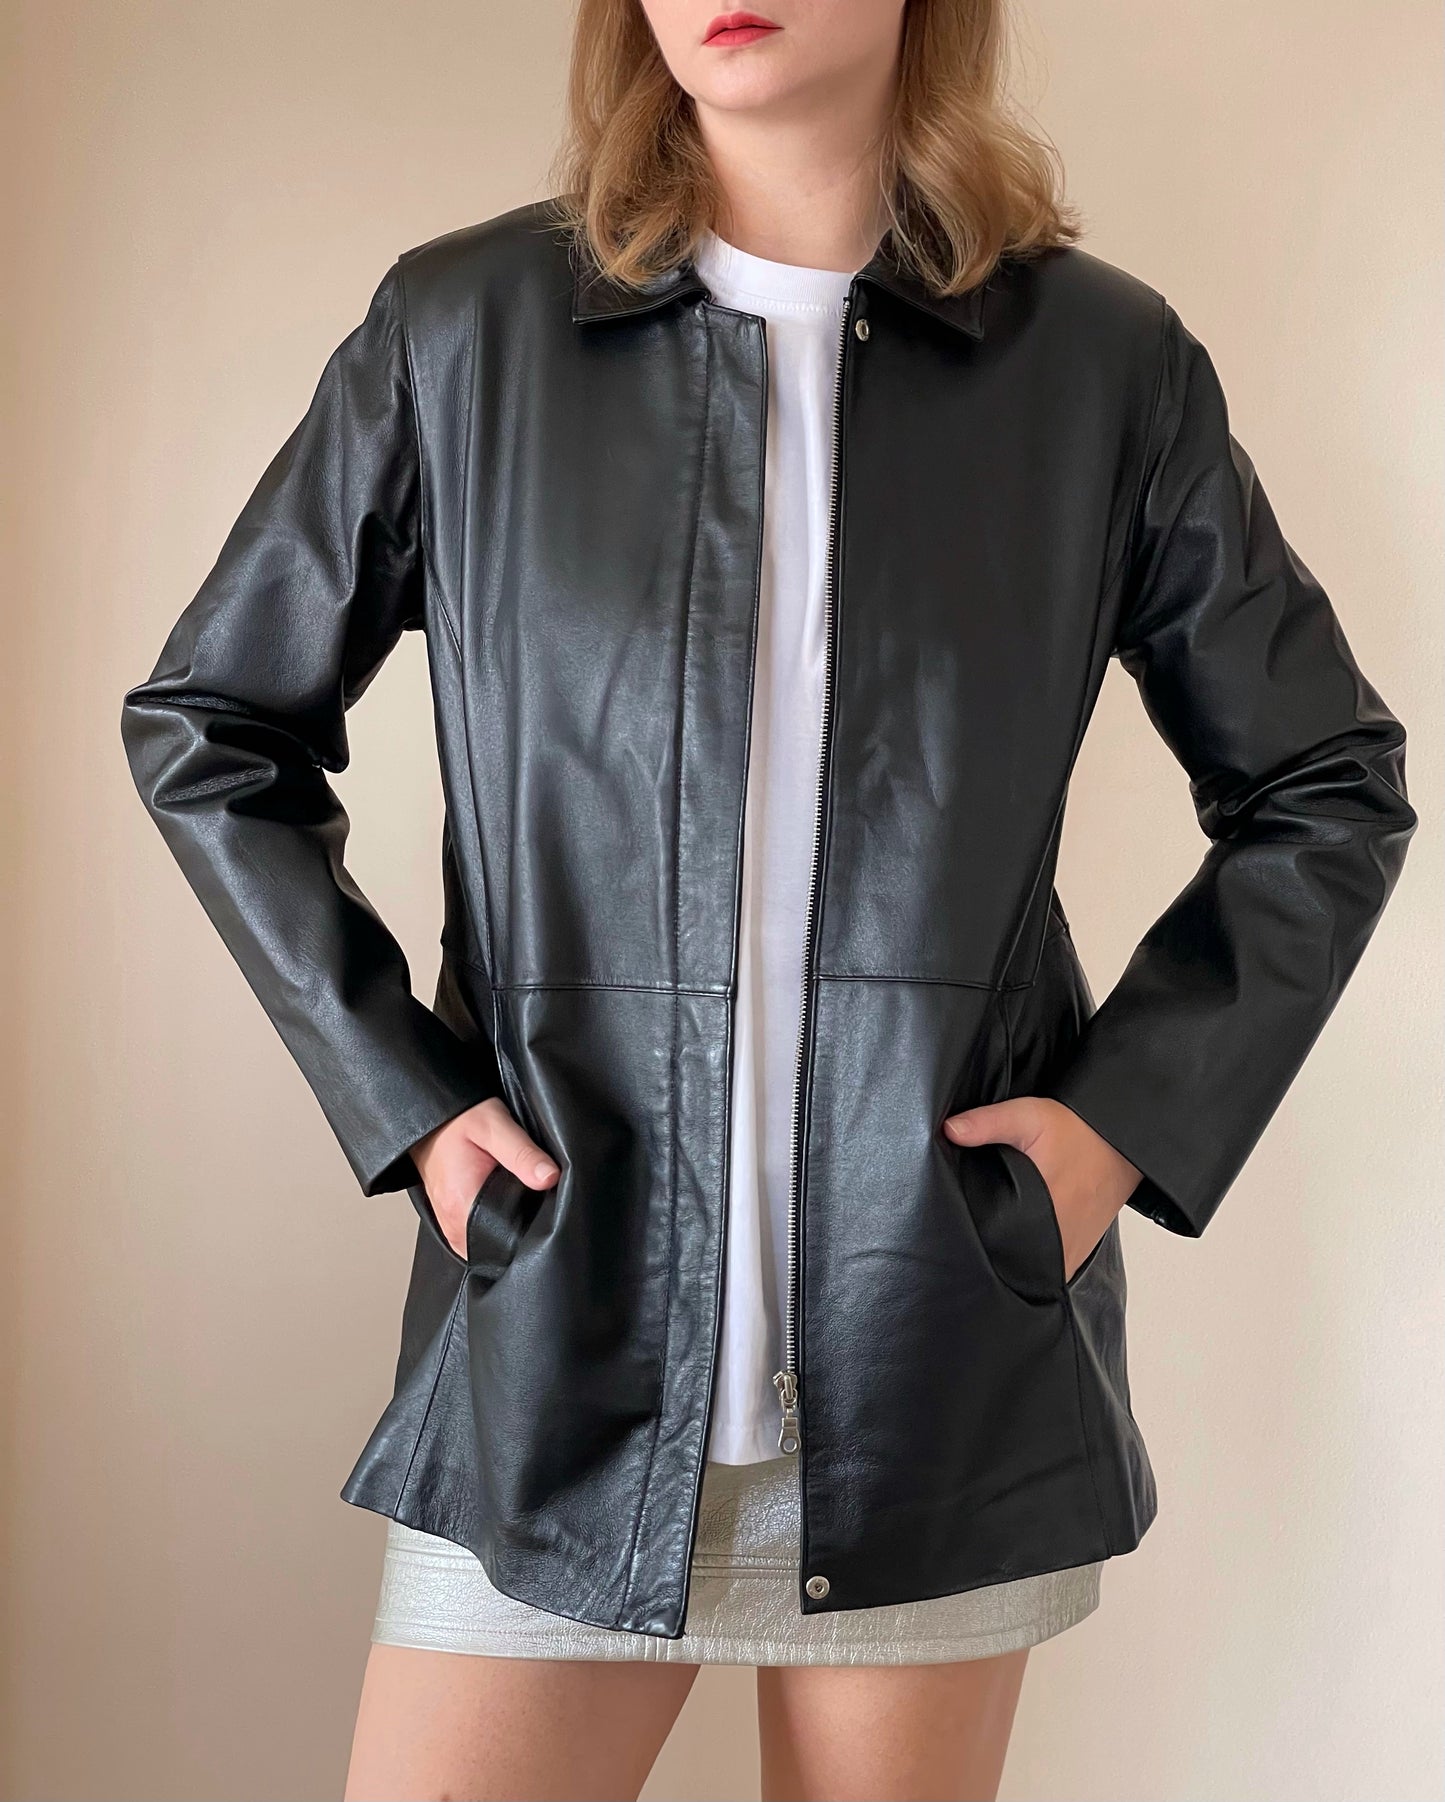 Stunning vintage minimalistic leather jacket